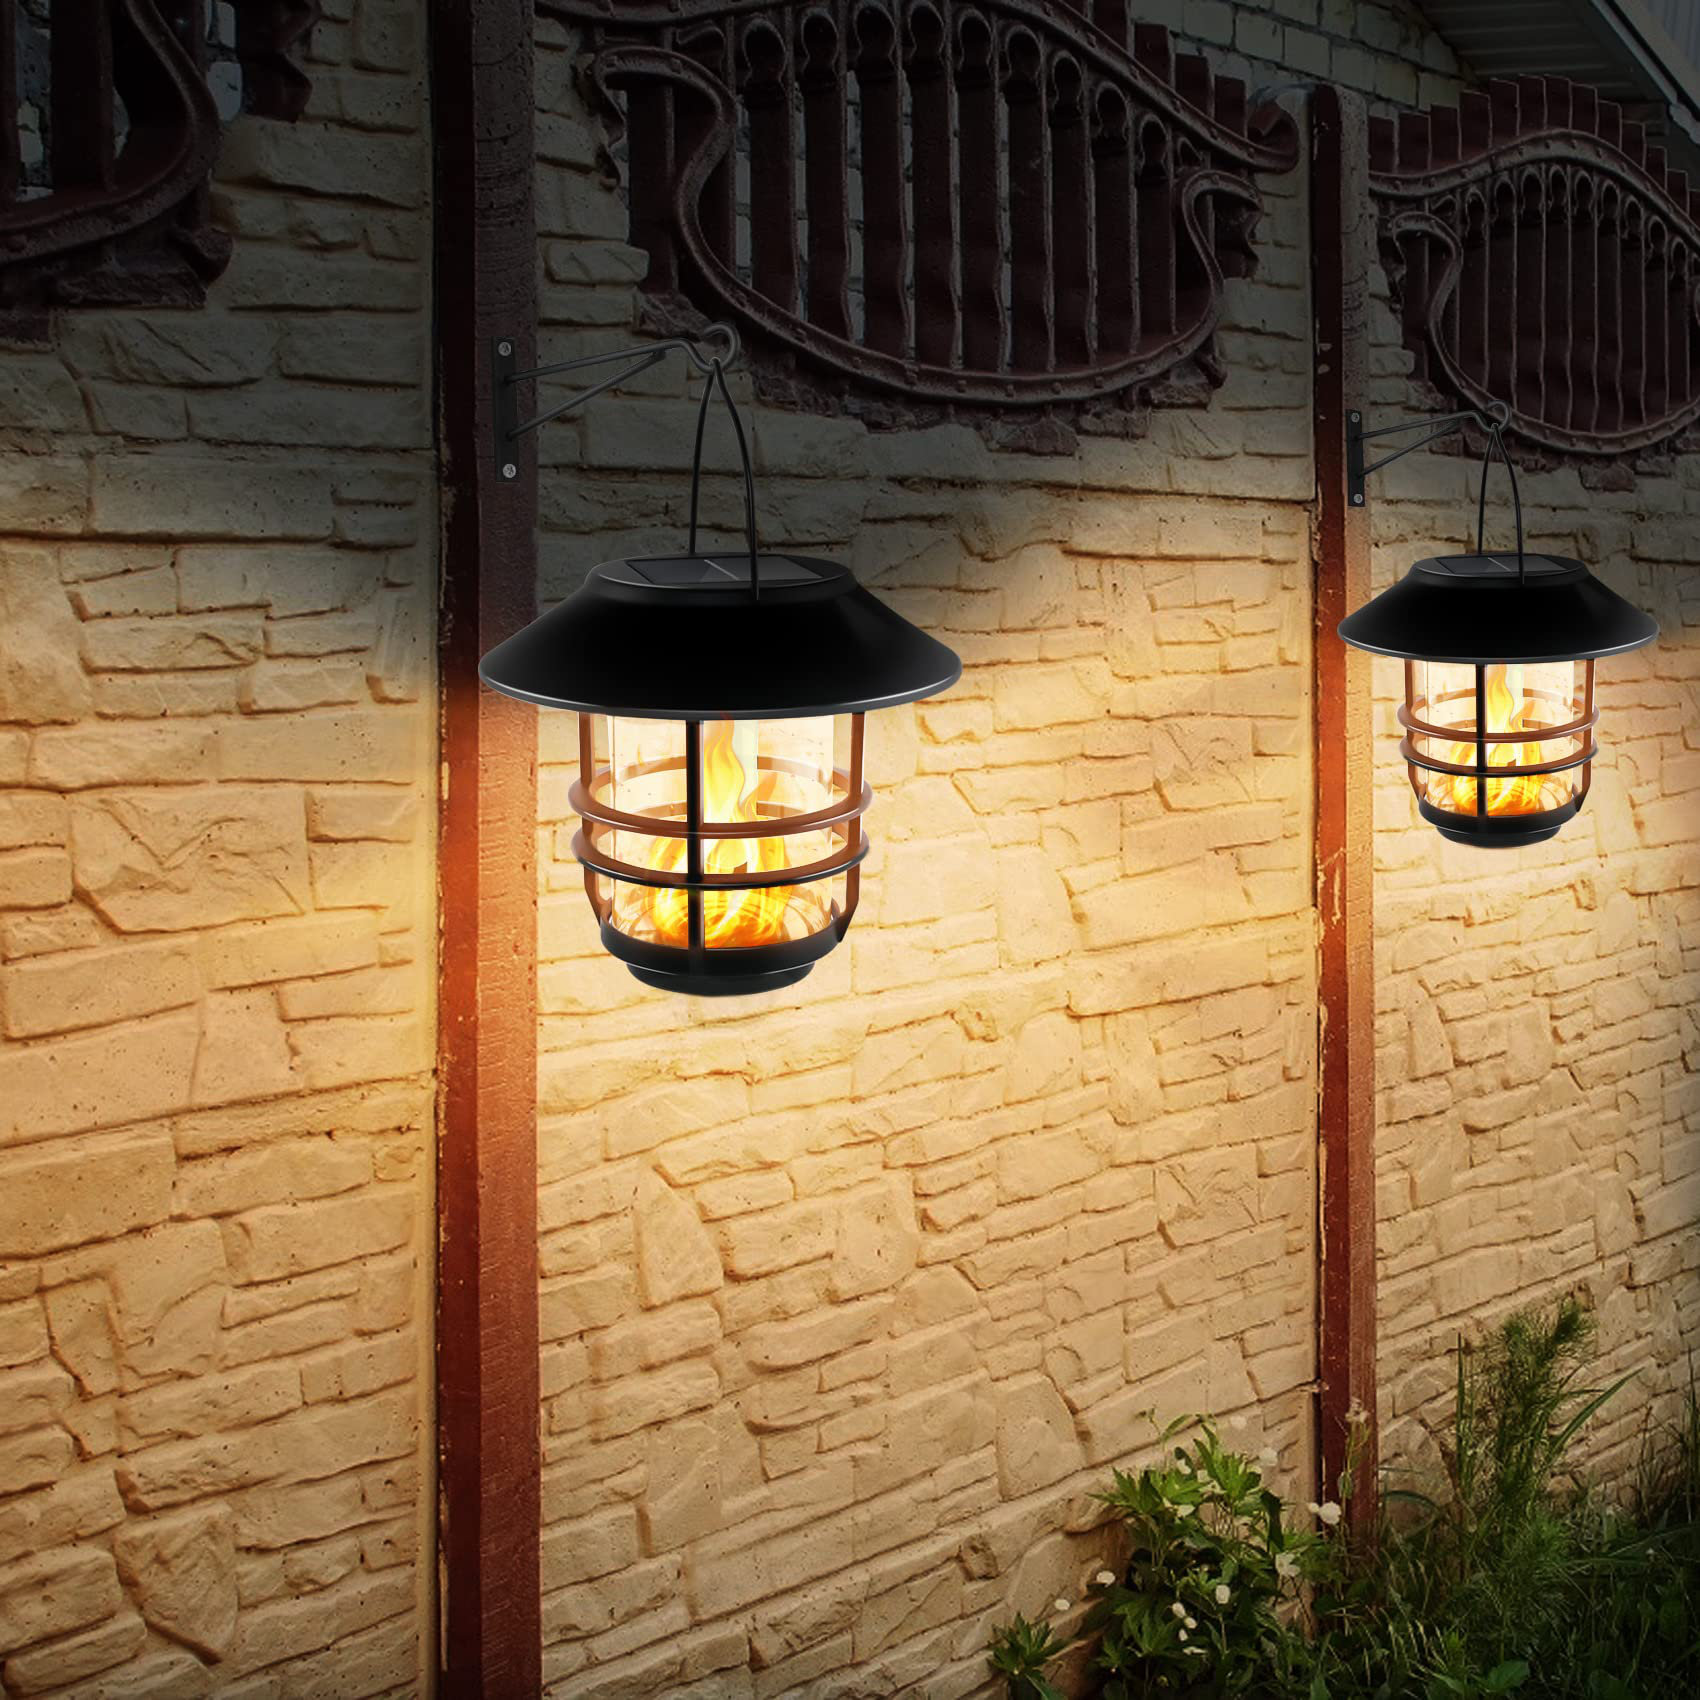 https://assets.wfcdn.com/im/60104297/compr-r85/2470/247009162/105-solar-powered-outdoor-lantern.jpg